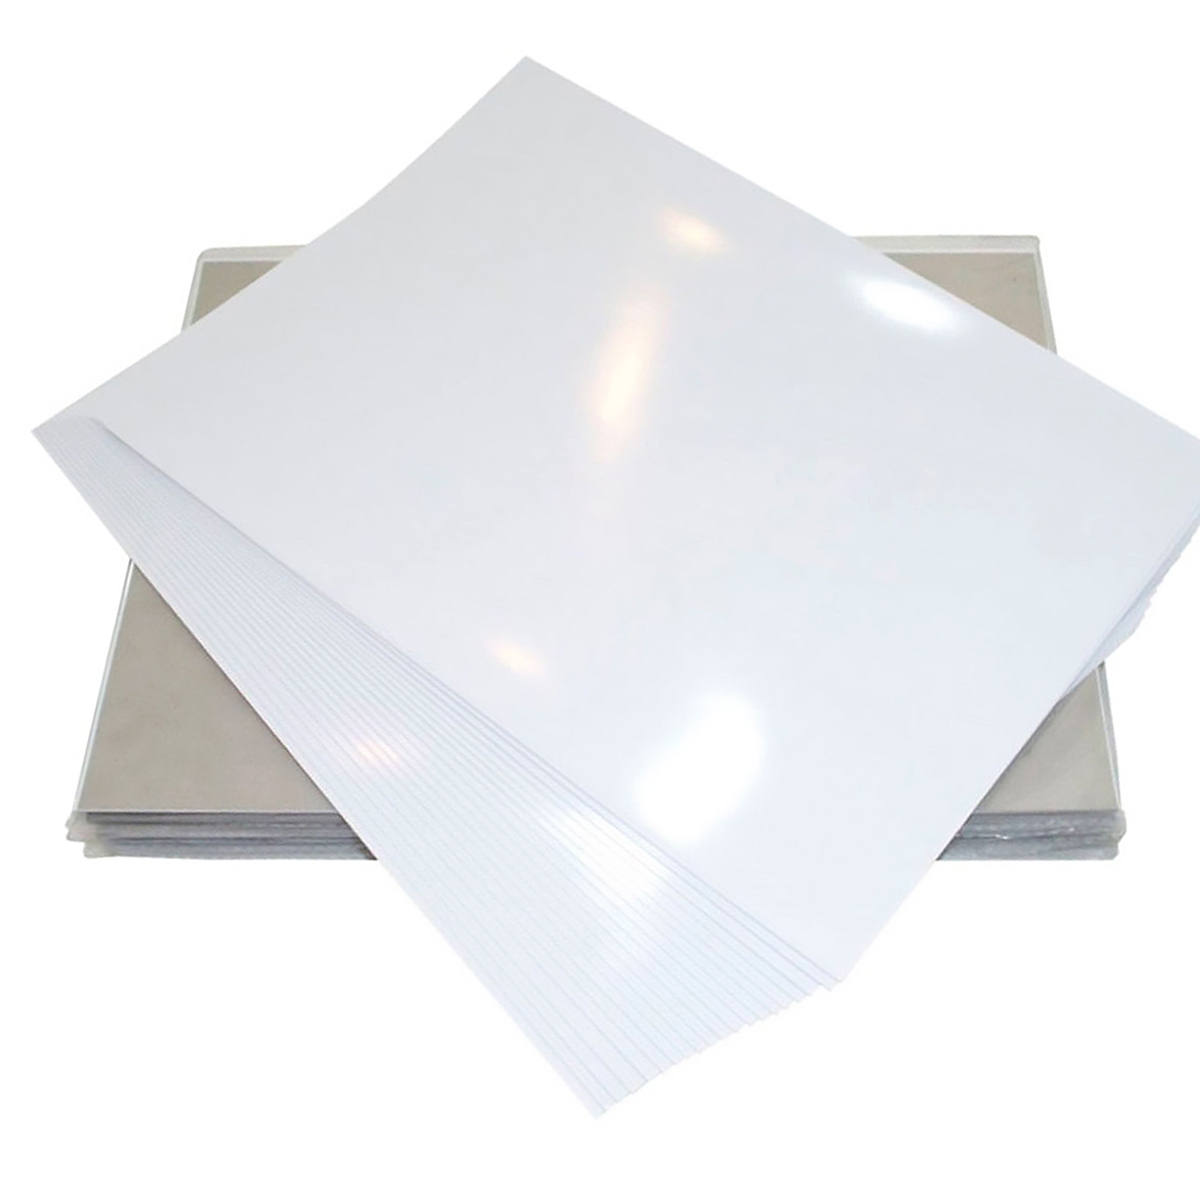 Papel Fotográfico A3 297mm x 420mm 180g Glossy Branco Brilhante Resistente à Água / 100 Folhas